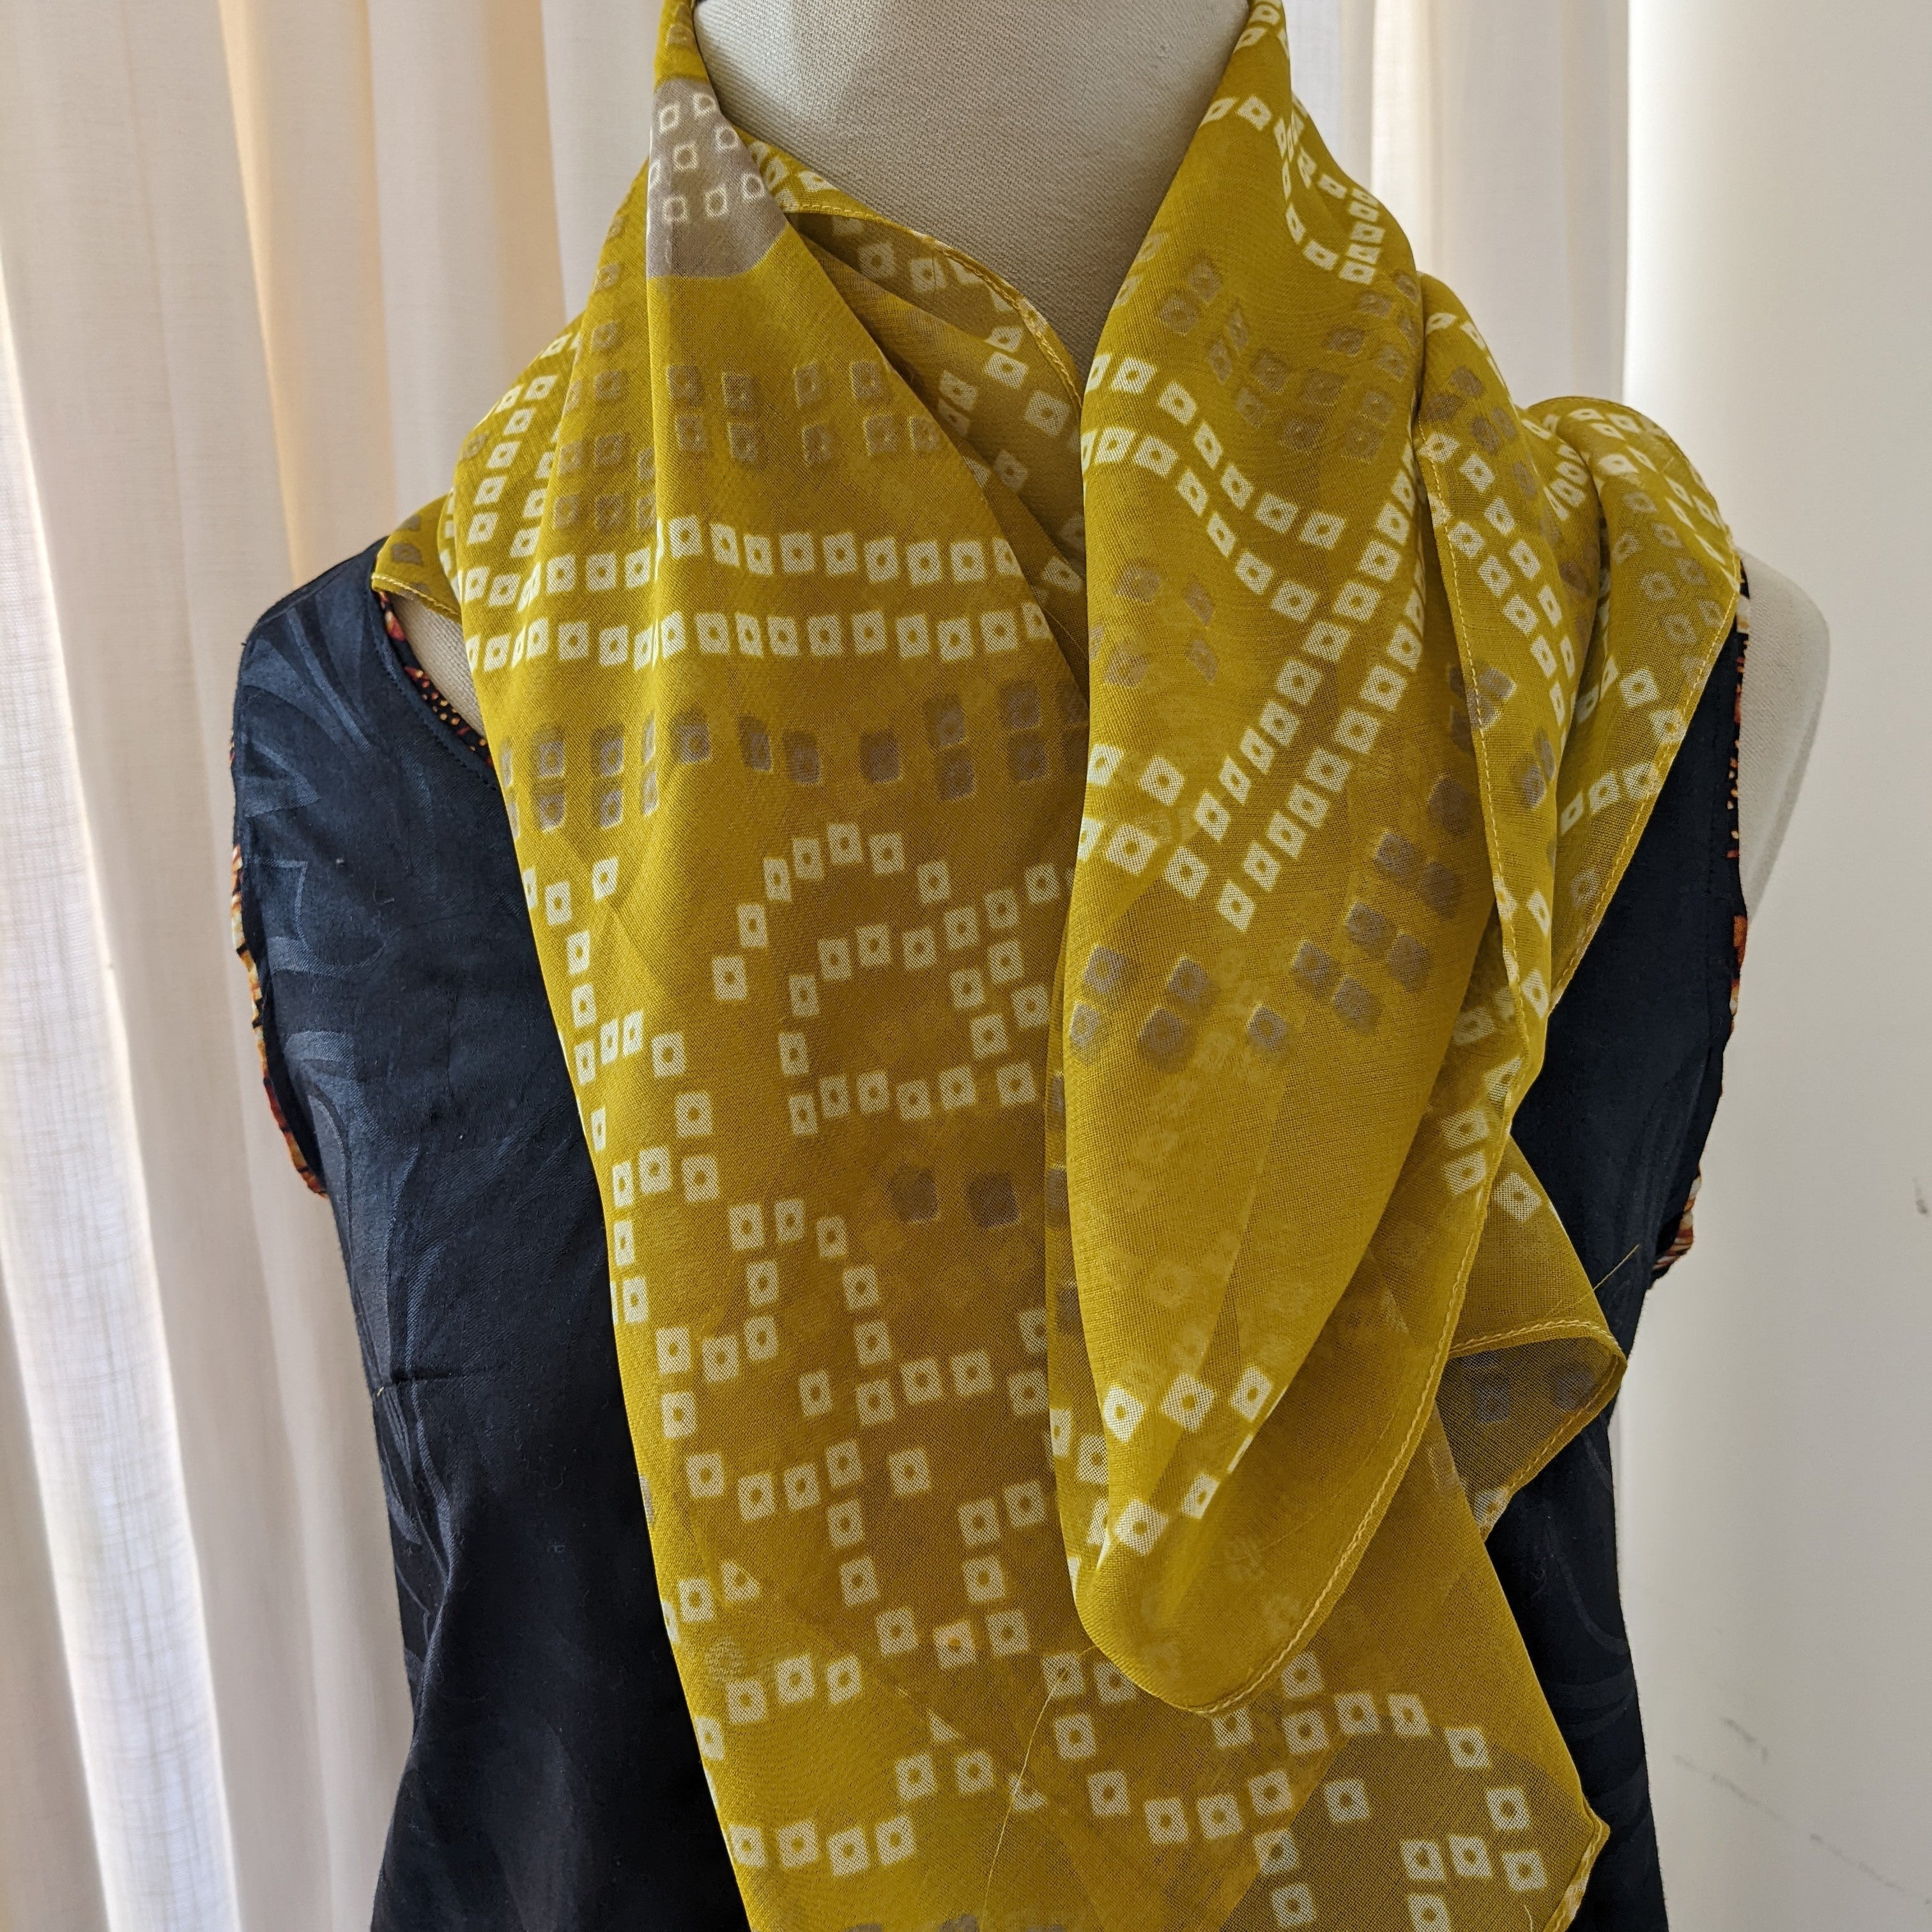 Upcycled Vintage Saree Silk Scarf